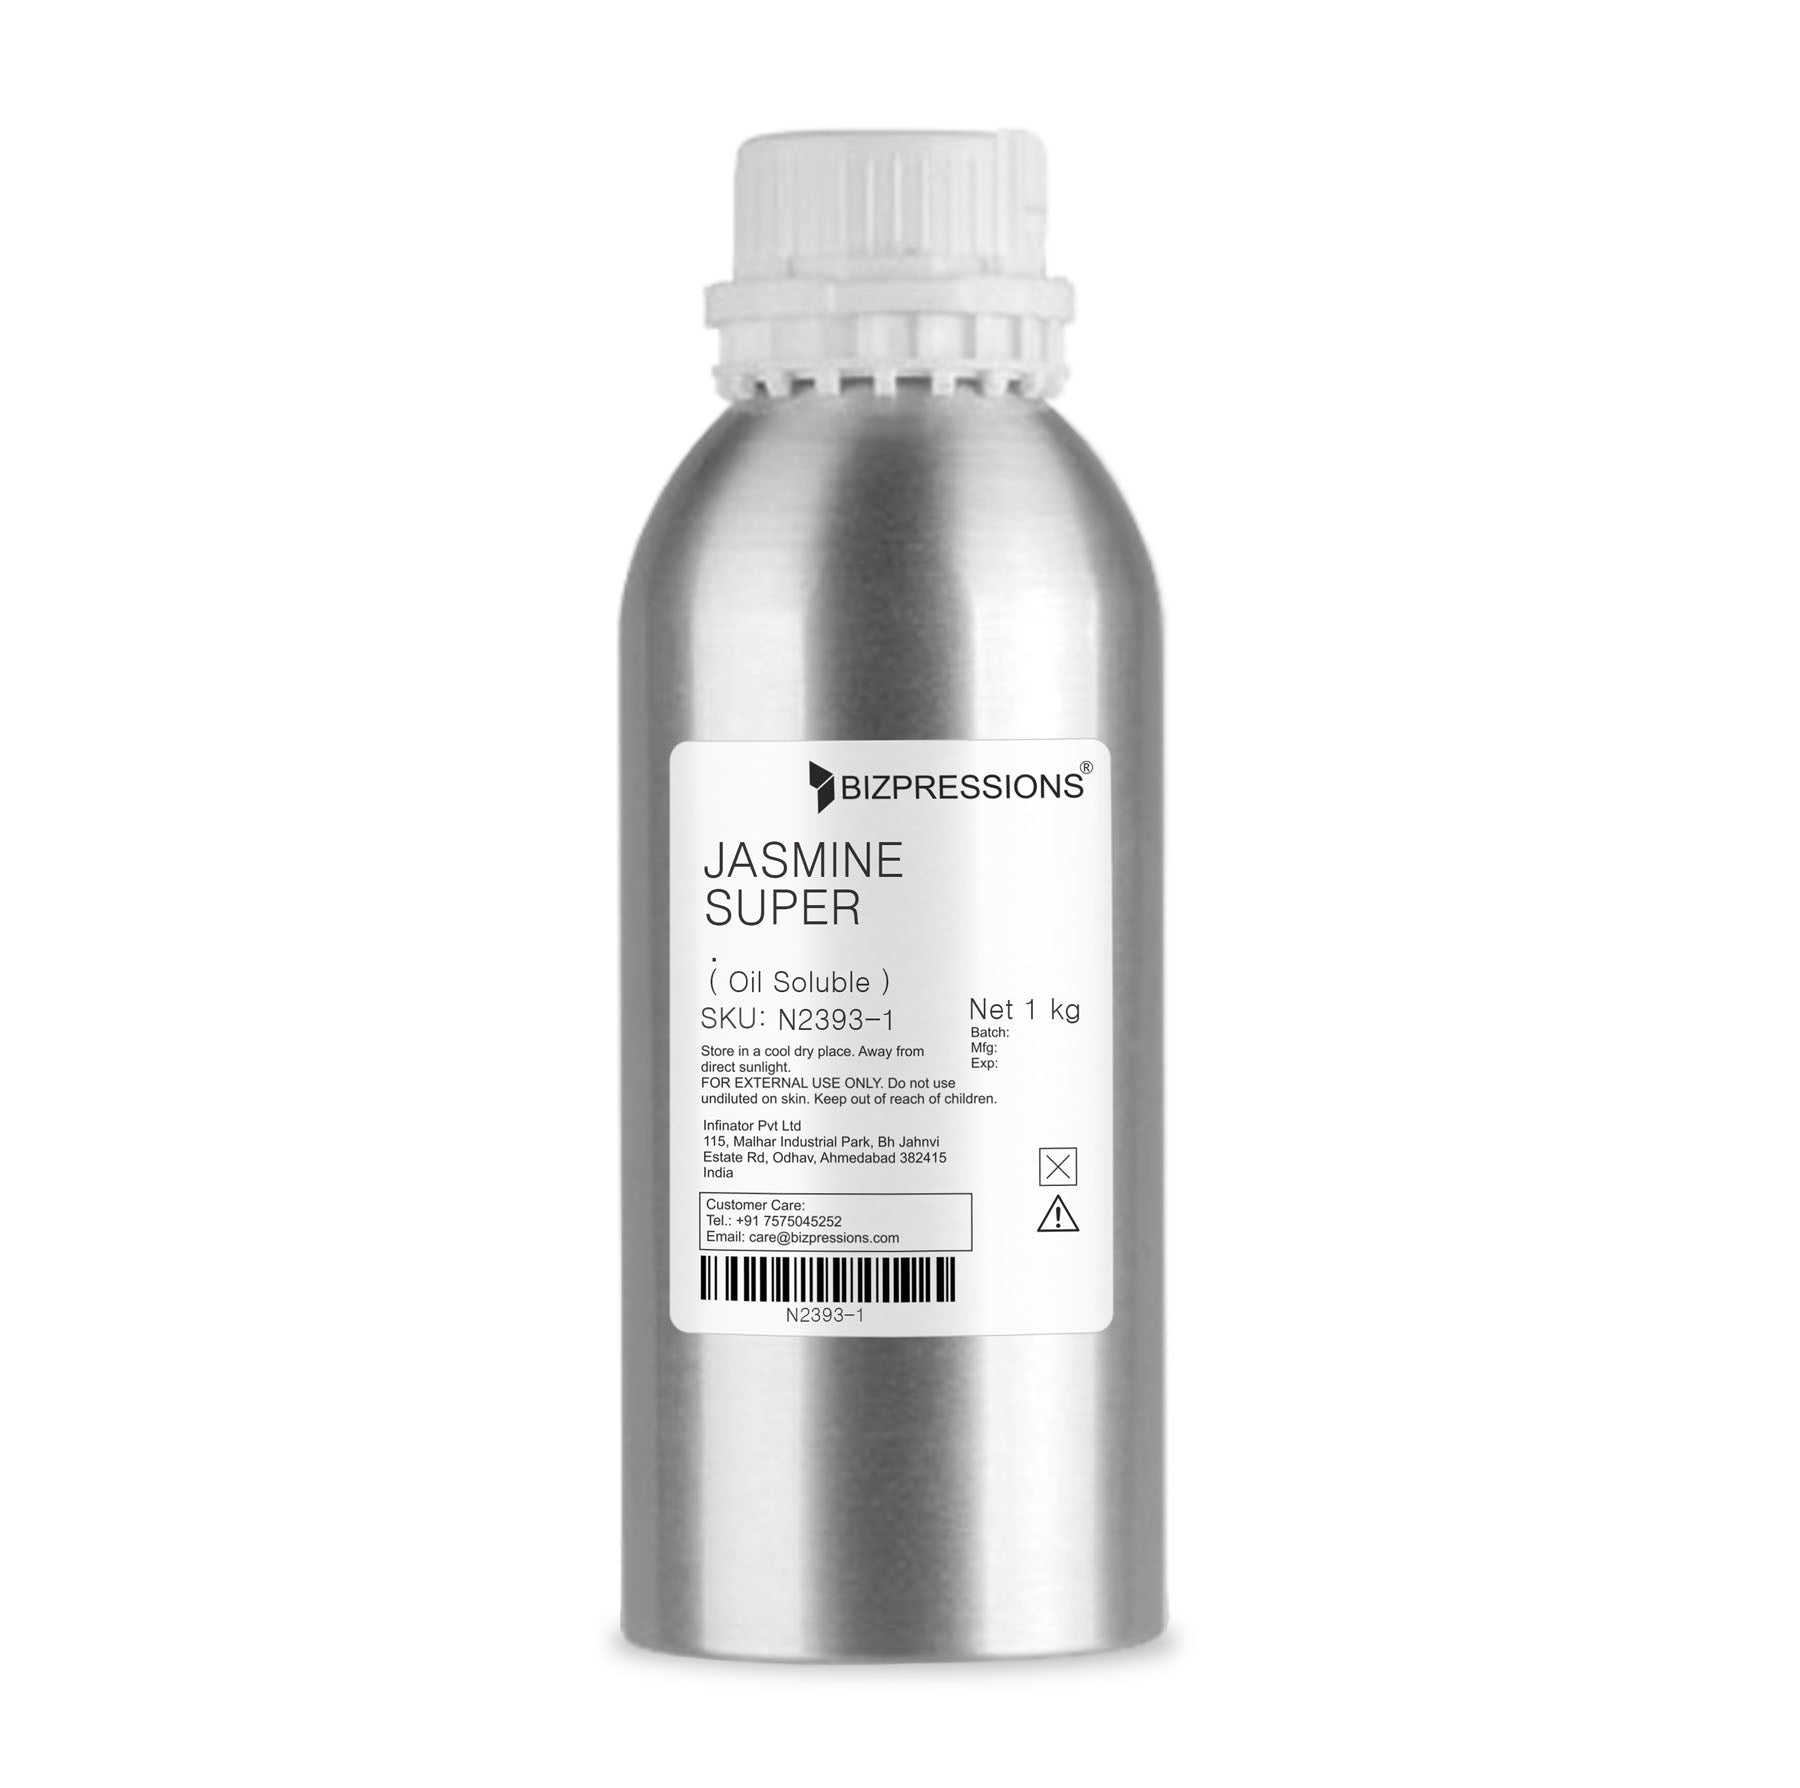 JASMINE SUPER - Fragrance ( Oil Soluble ) - 1 kg